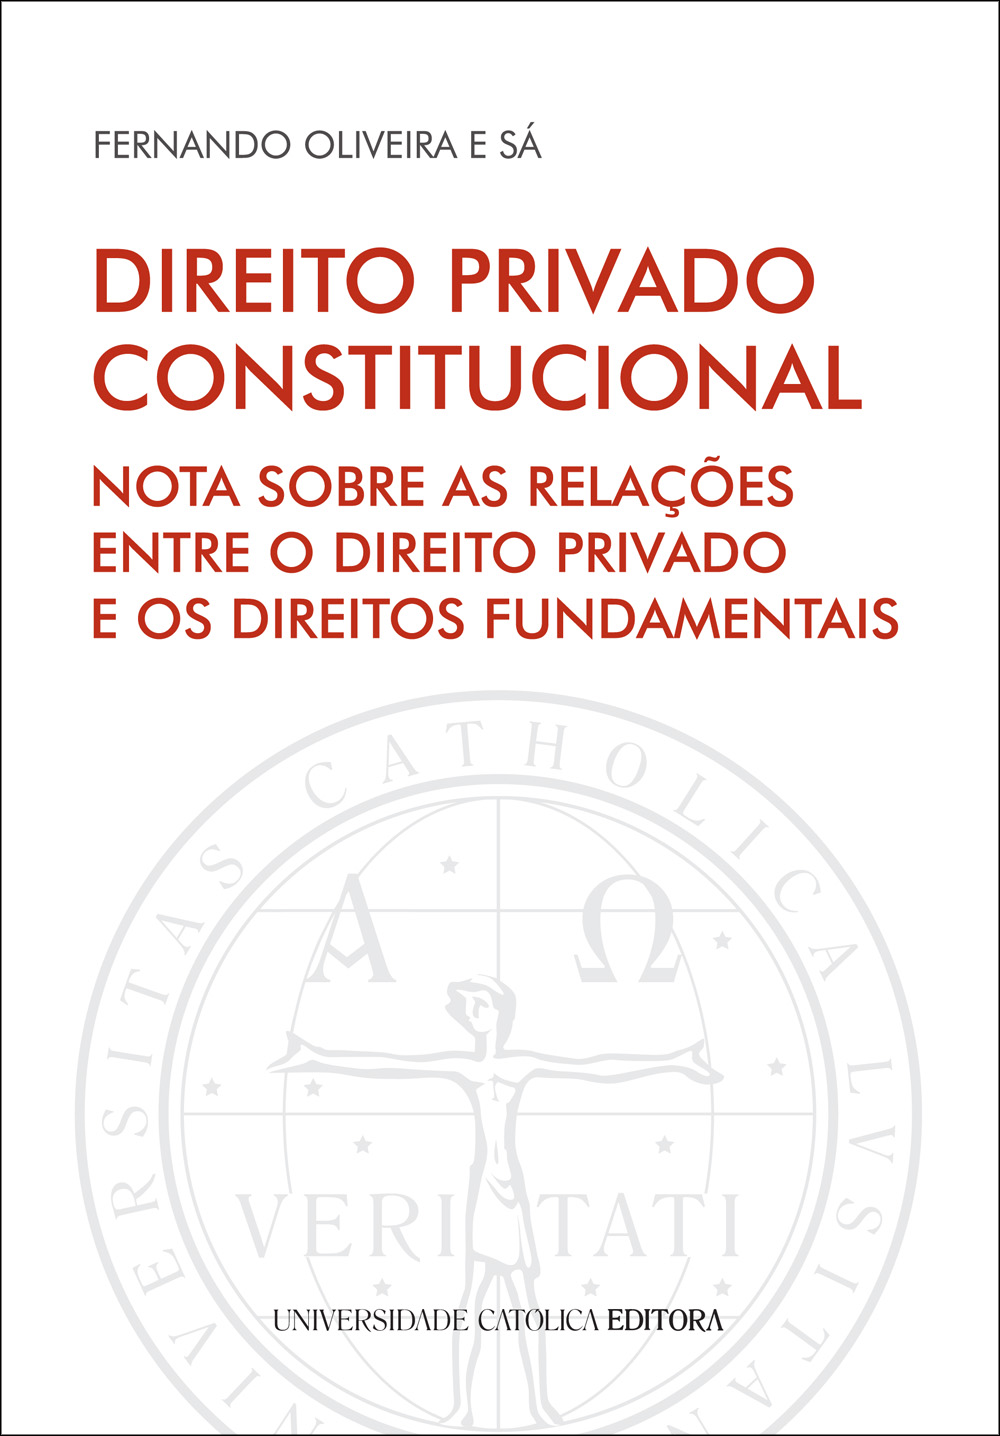 DIREITO PRIVADO CONSTITUCIONAL - Nota sobre as relações entre o Direito Privado e os Direitos Fundamentais